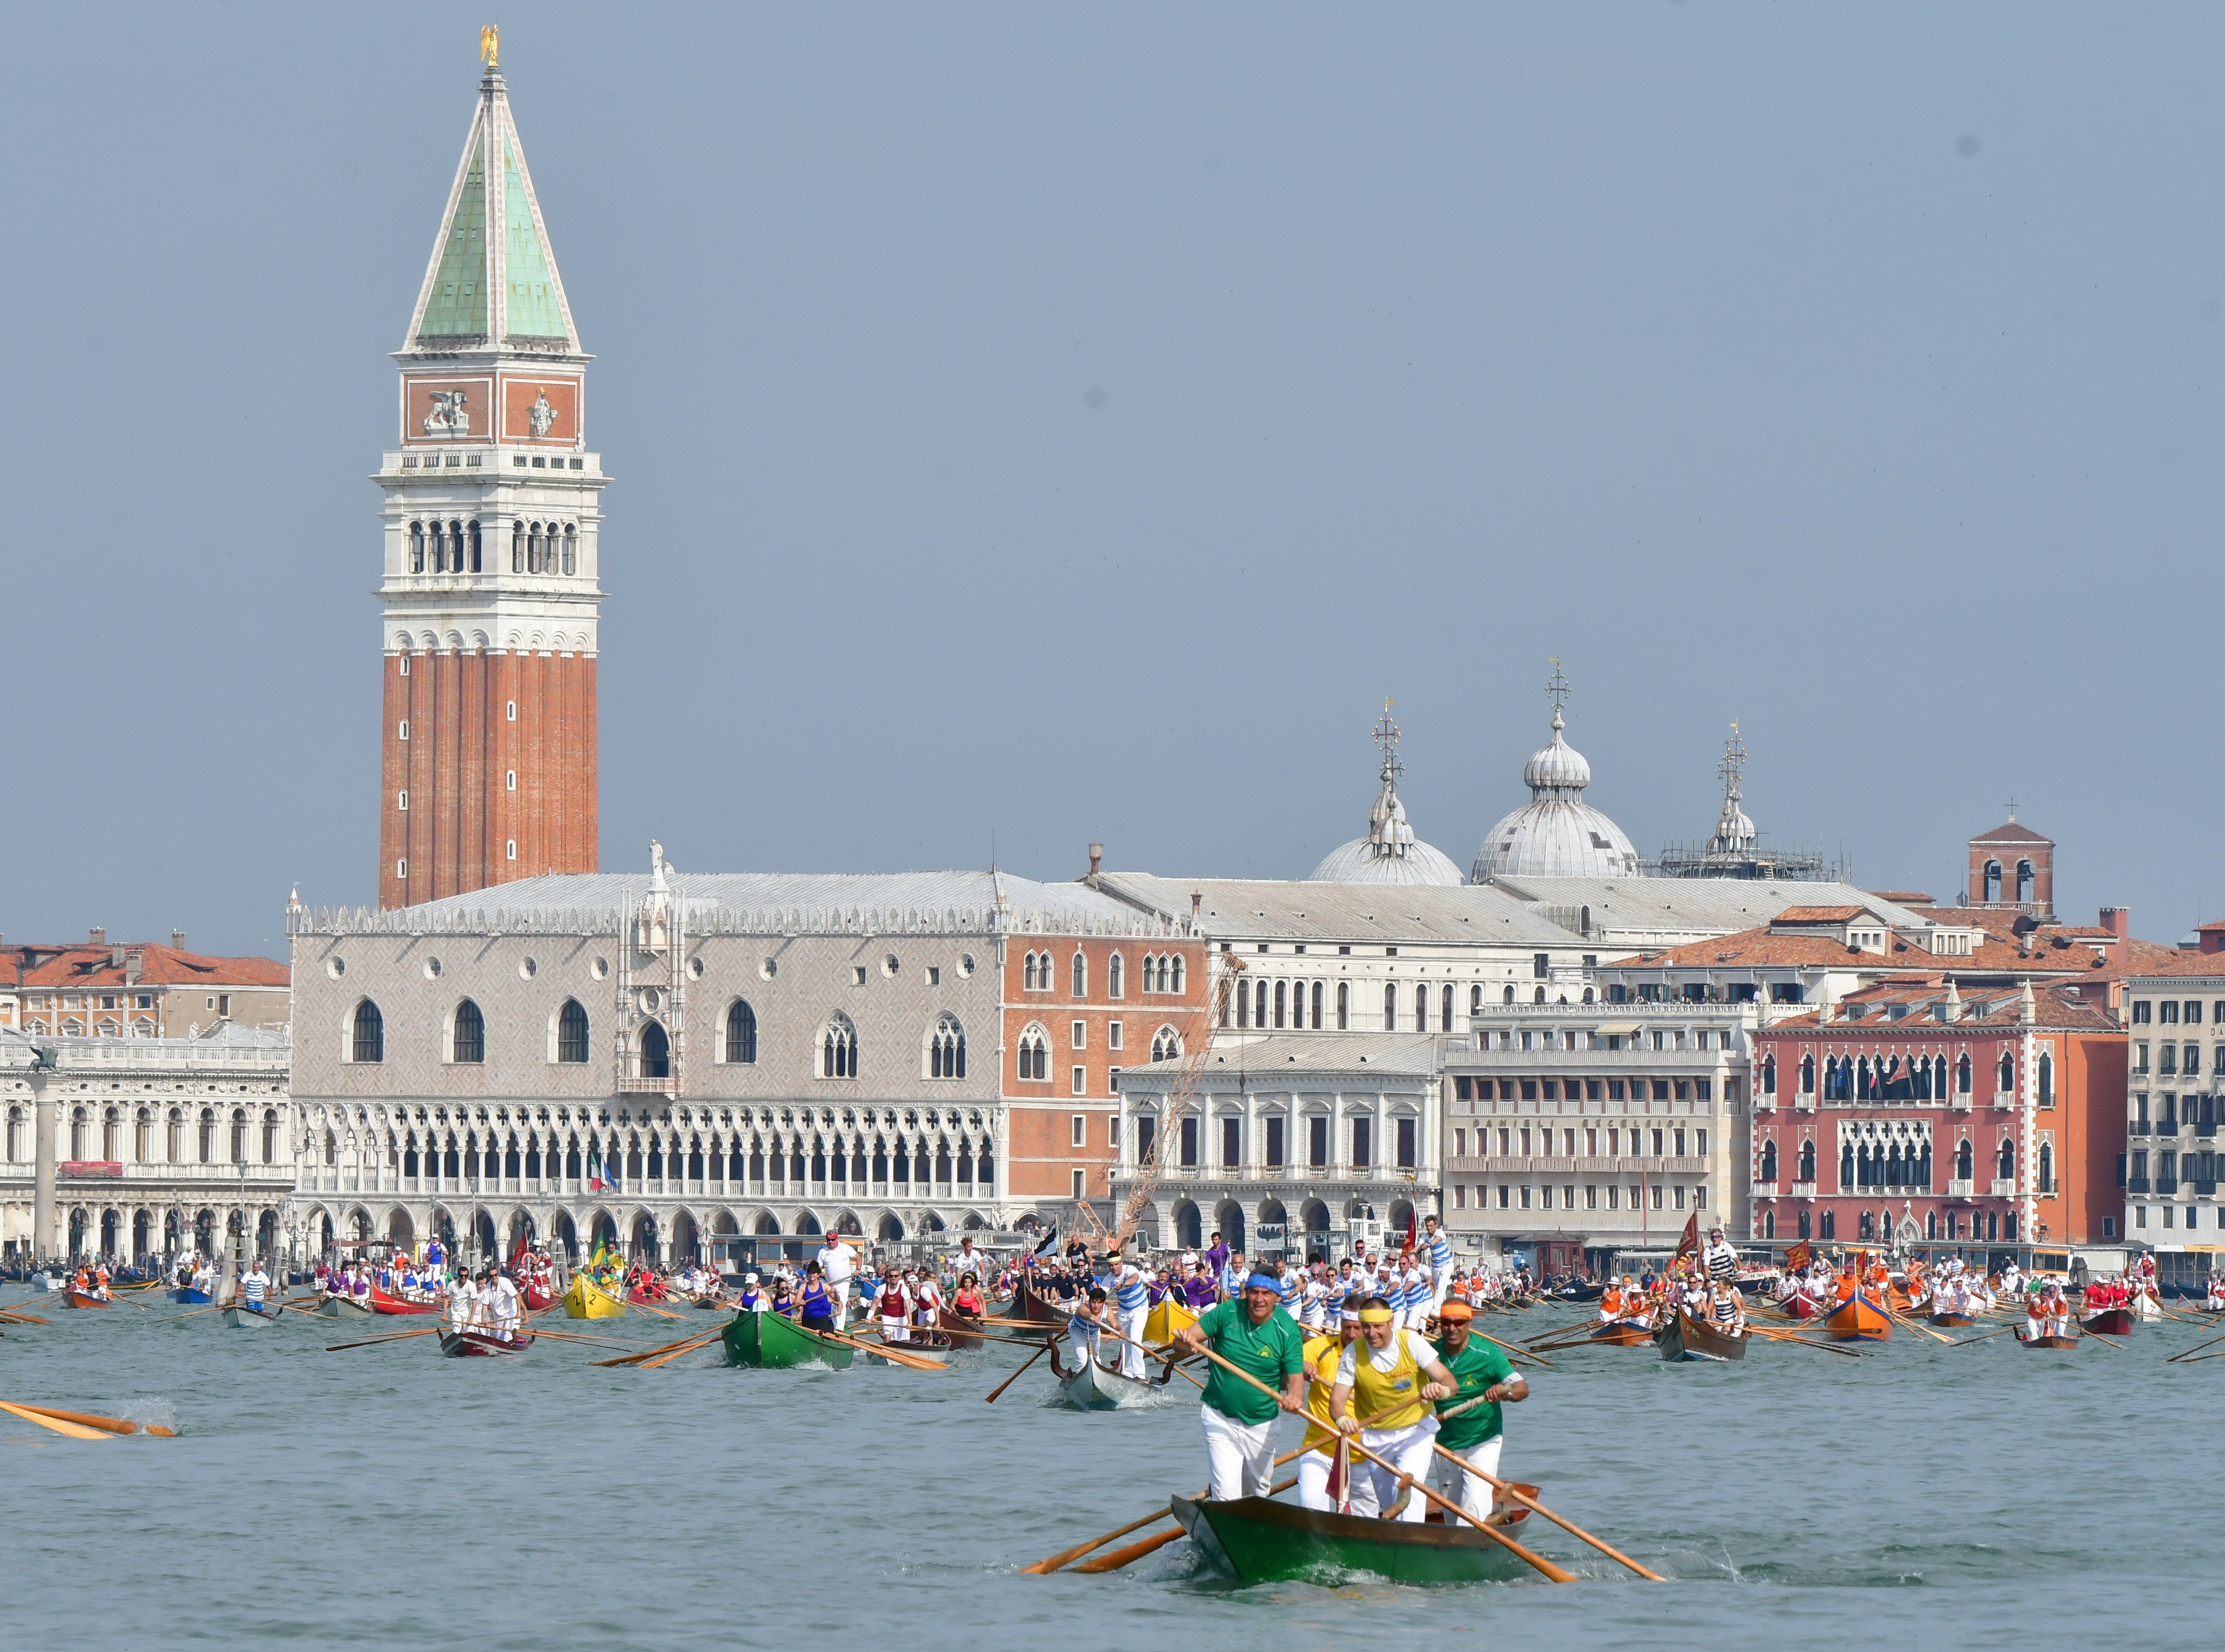 Venècia cobrarà entrada per accedir a la ciutat a partir de l'estiu de 2022